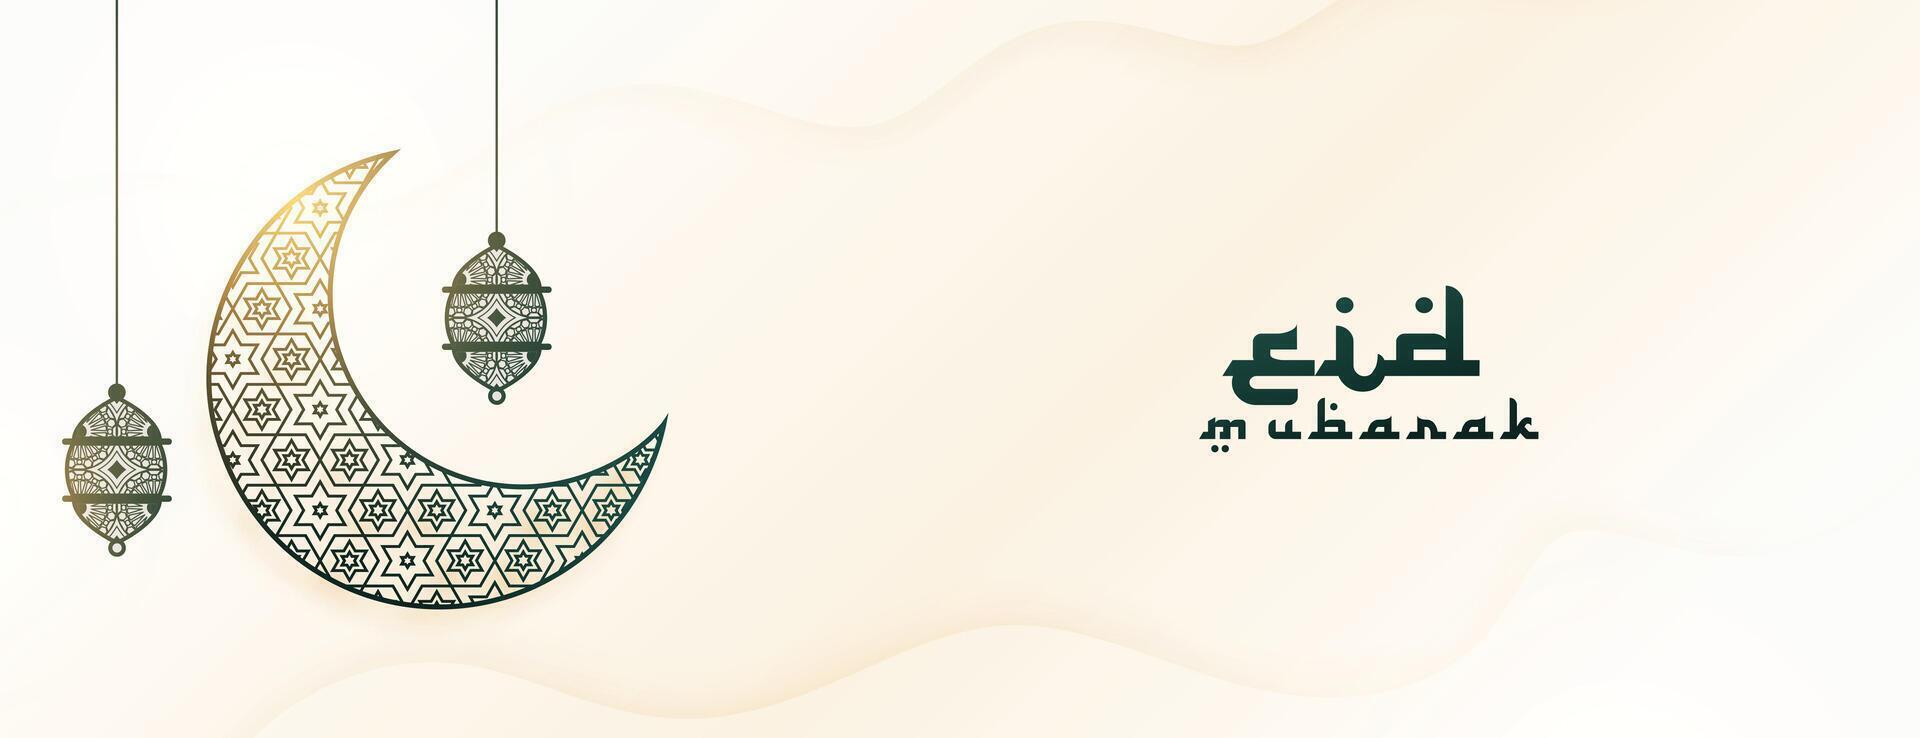 schön eid al adha Banner Design zum das festlich Jahreszeit vektor